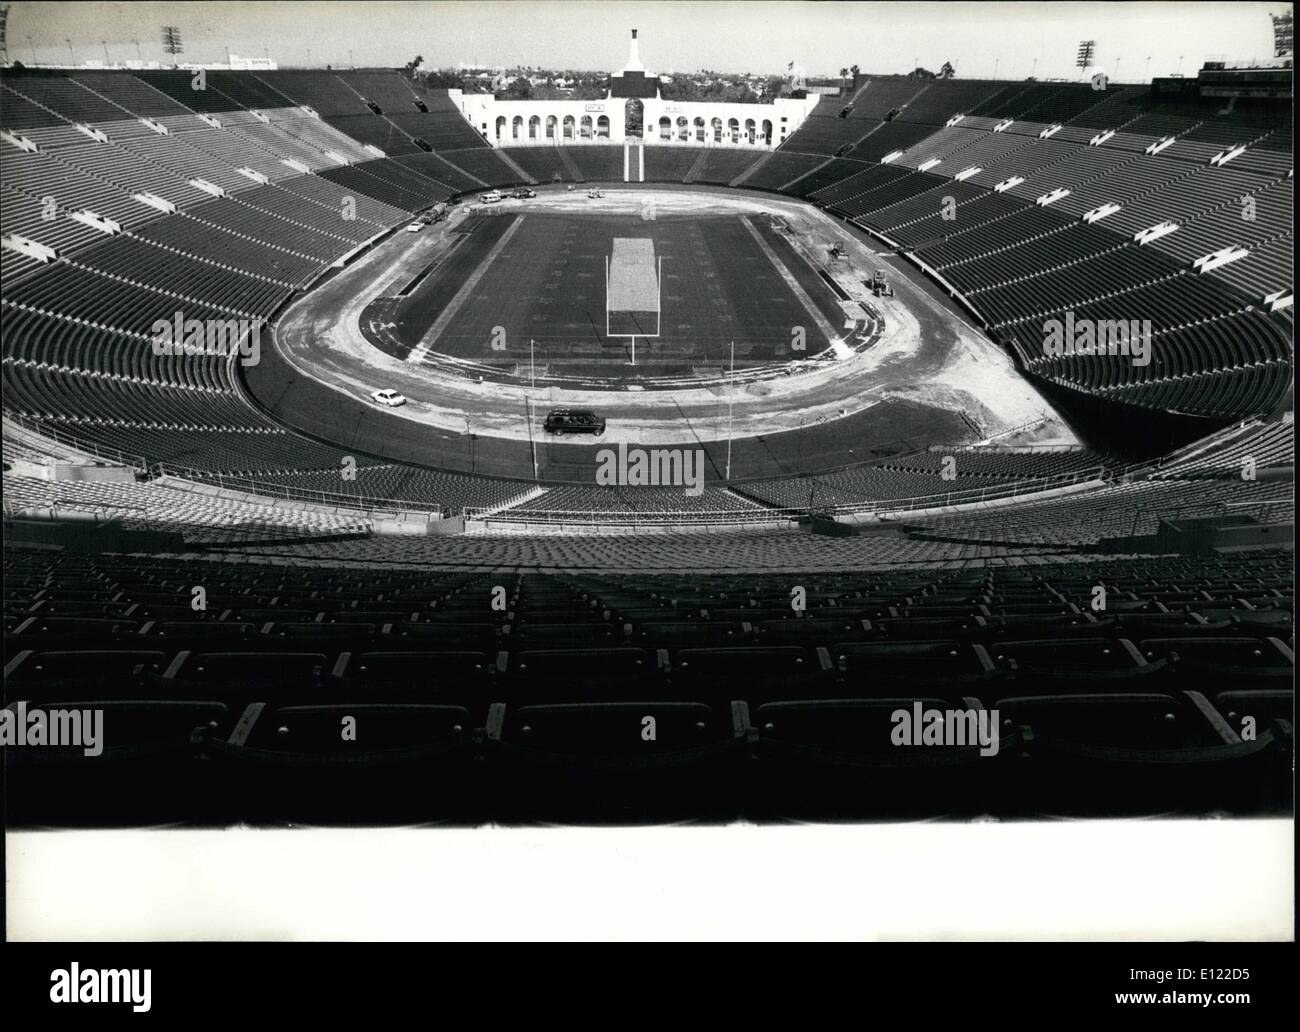 Lug. 07, 1983 - Un anno prima di Los Angeles Olimpiadi. Nel Los Angeles Memorial Coliseum il presidente statunitense Reagen sarà aperto il 1984 giochi di fronte a circa 100'000 spettatori . Anche la cerimonia di chiusura e la pista e il campo eventi si terrà qui. Foto Stock